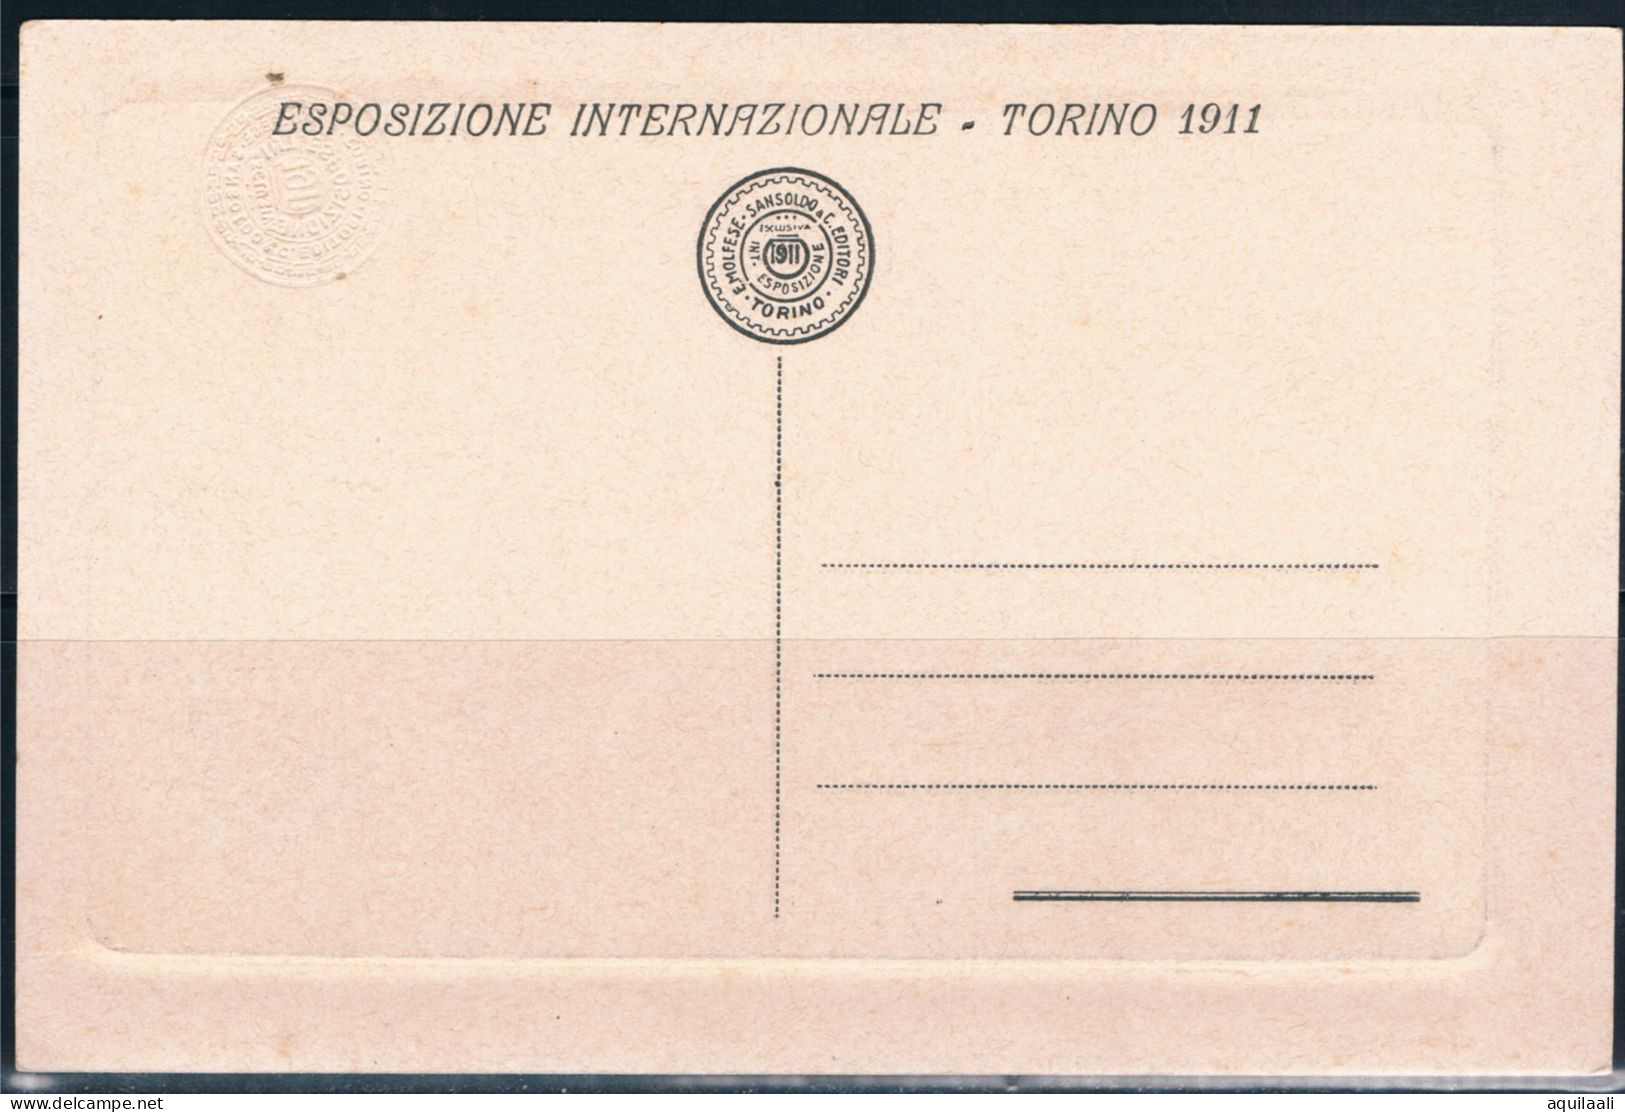 Torino Expo 1911, Artistico Padiglione "Paquin". Cartolina Nuova Non Viaggiata. - Exposiciones